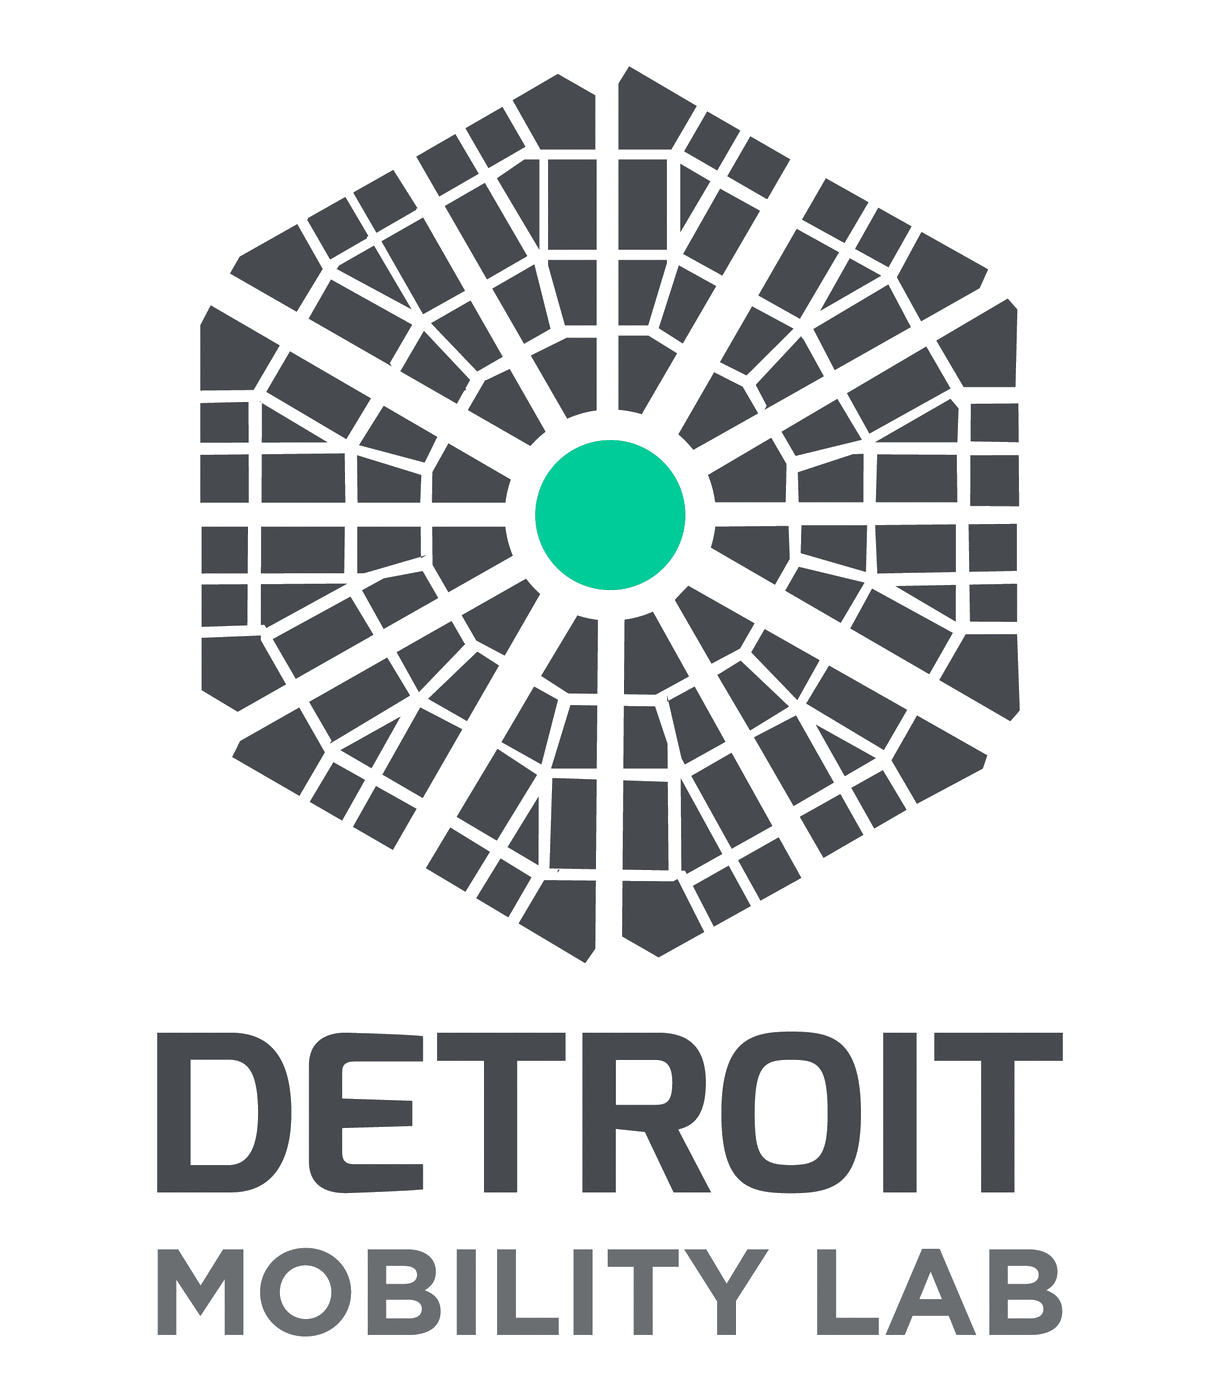 Detroit Mobility lab logo